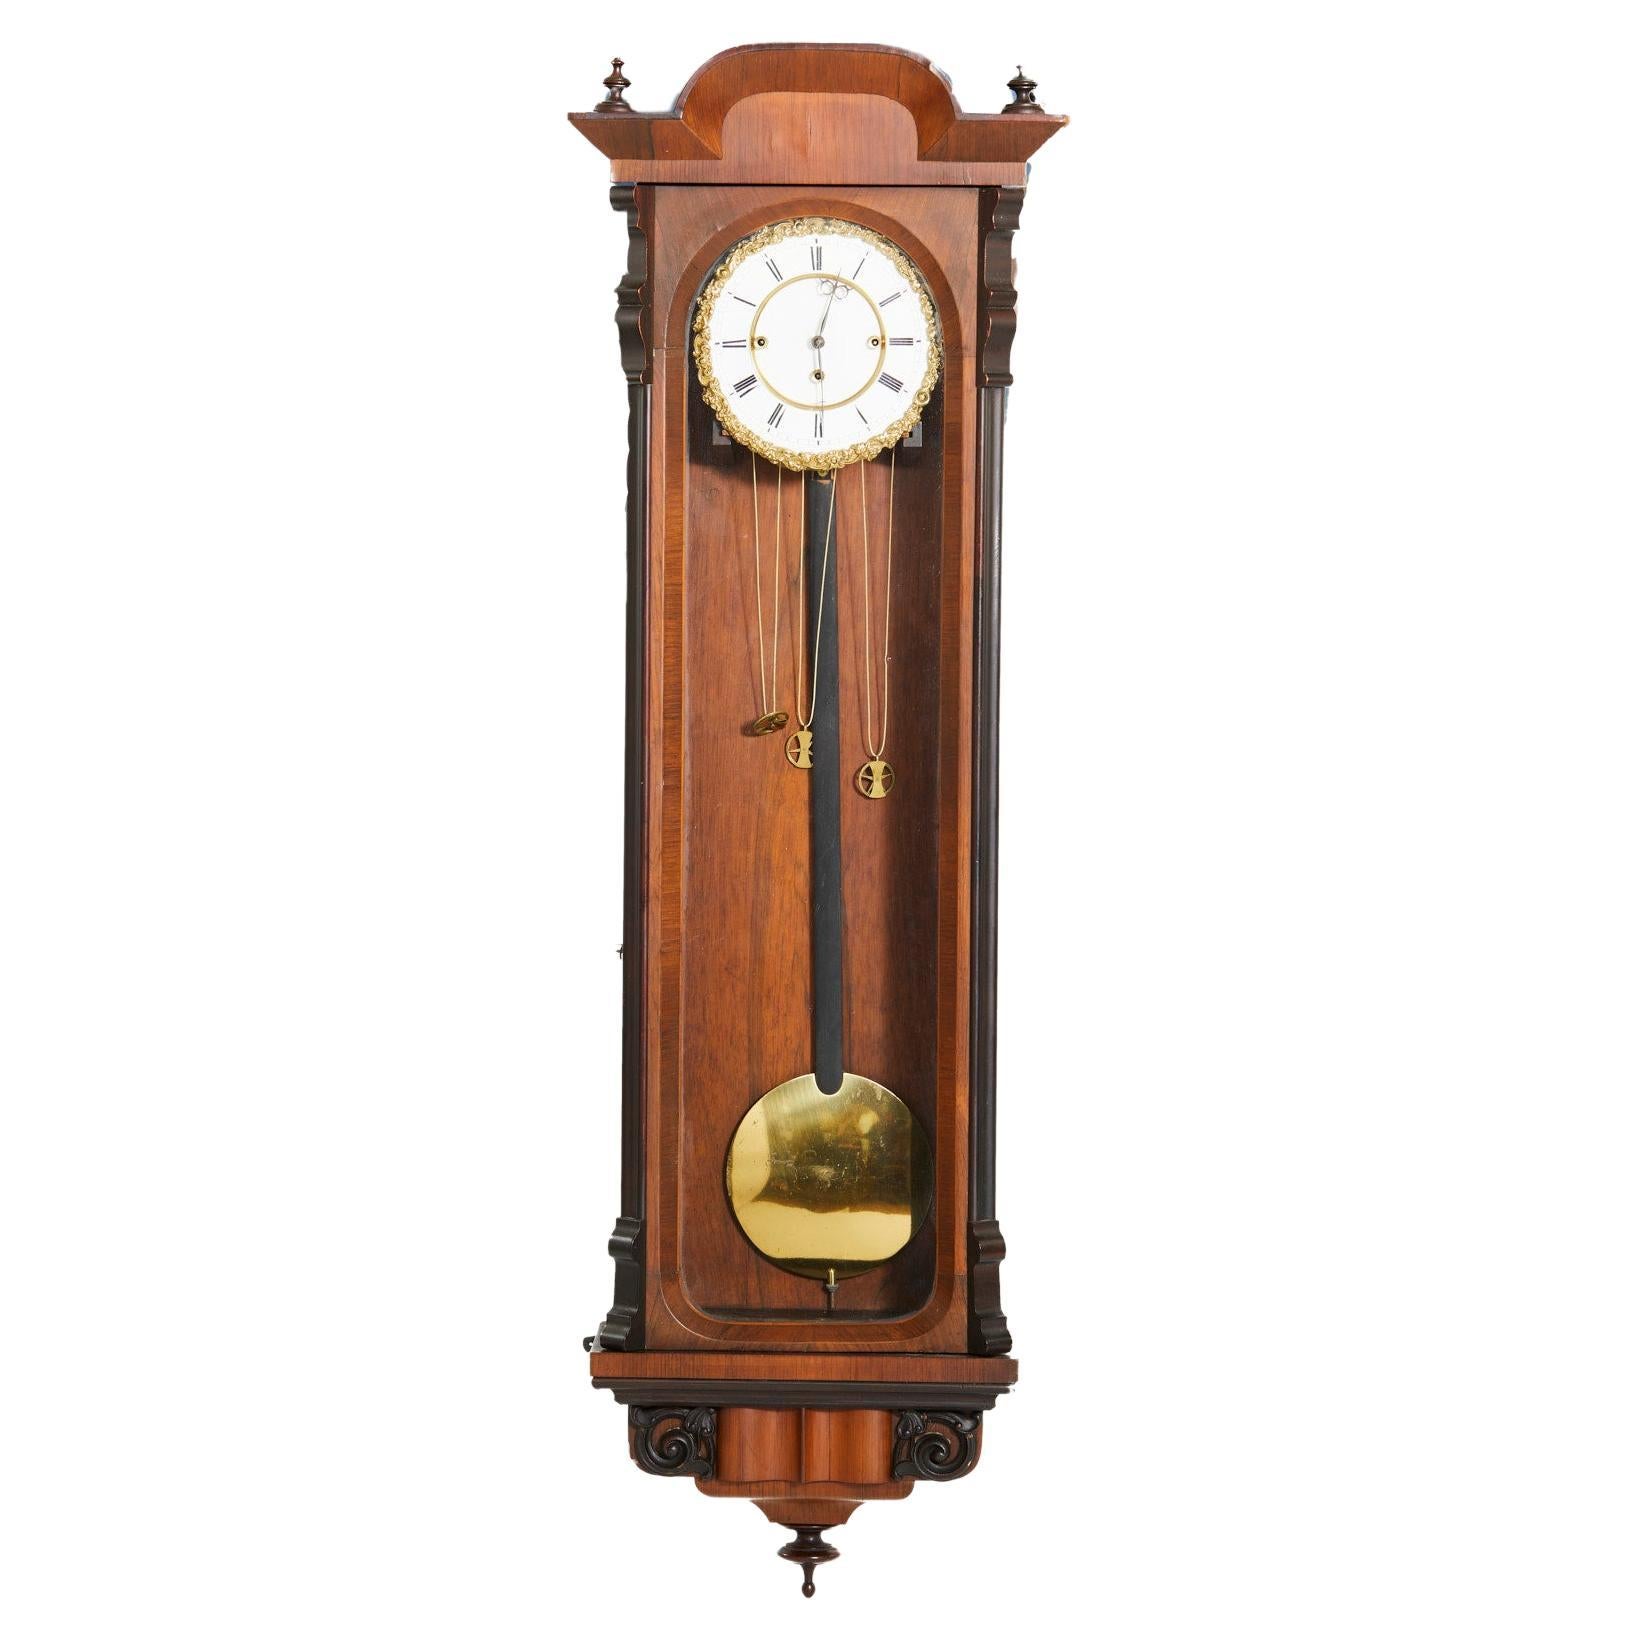 Horloge régulateur de la Grande Sonnerie de Vienne du 19e siècle